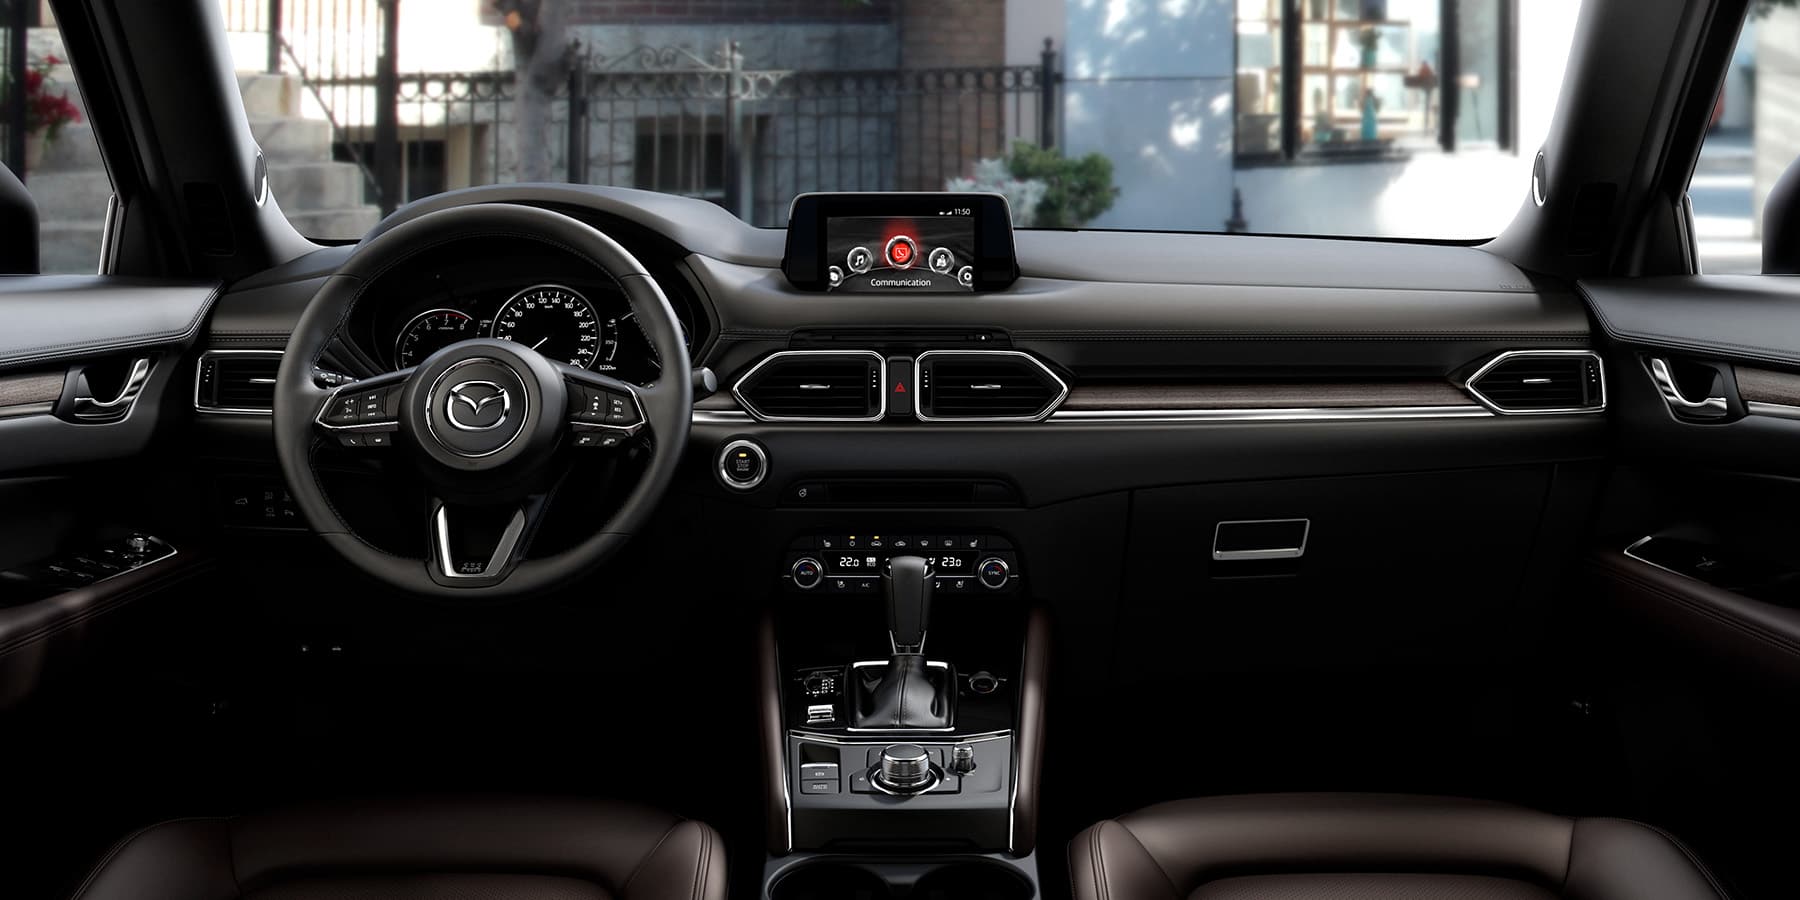 Новый Mazda CX-5 - обзор, фото, технические характеристики, комплектации